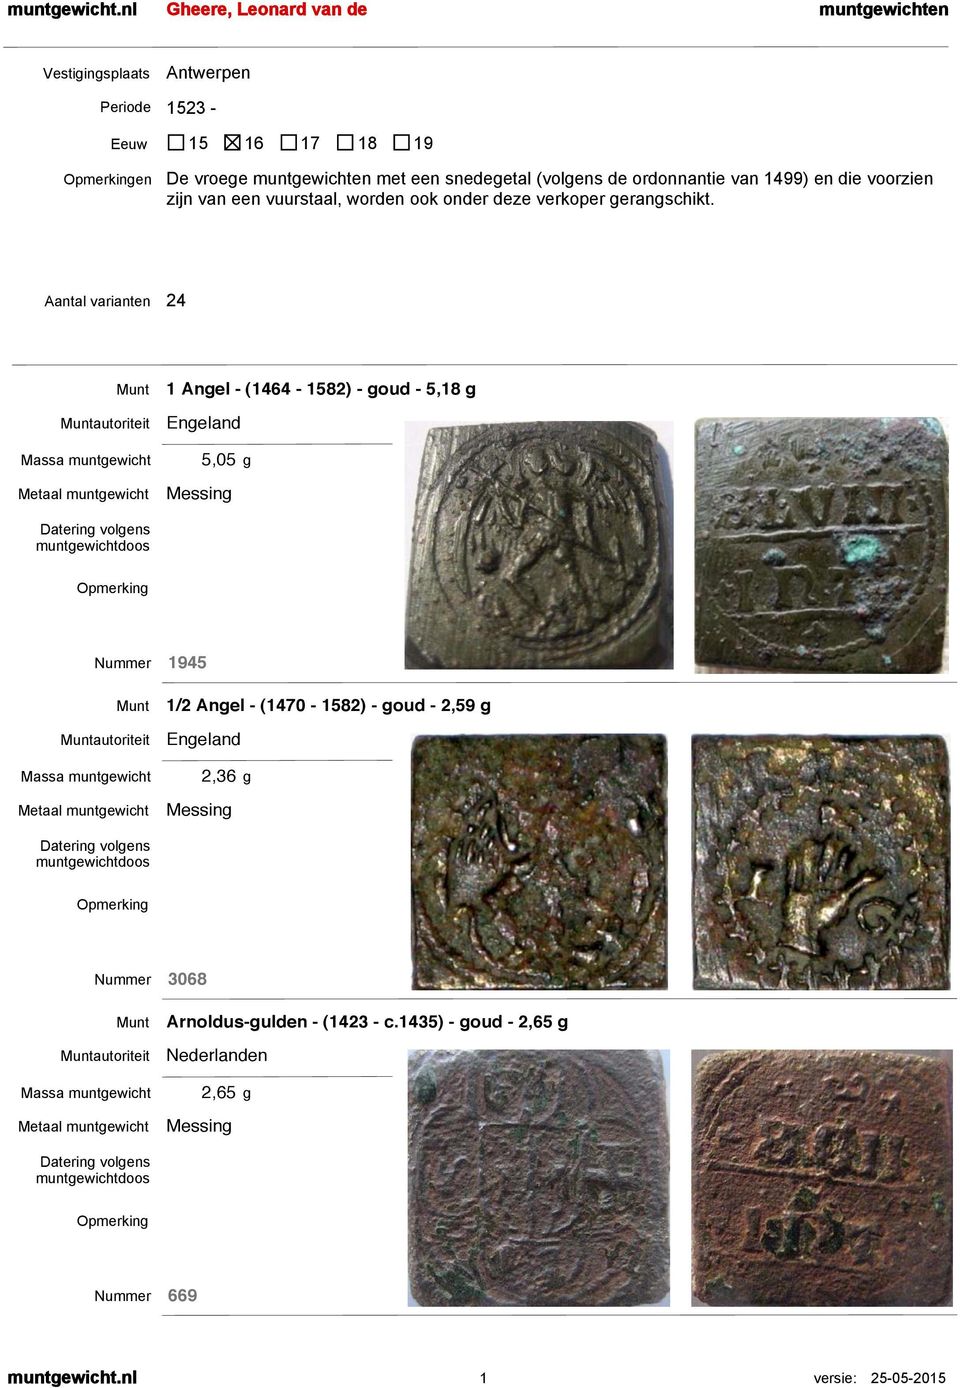 muntewichten met een snedeetal (volens de ordonnantie van 1499) en die voorzien zijn van een vuurstaal, worden ook